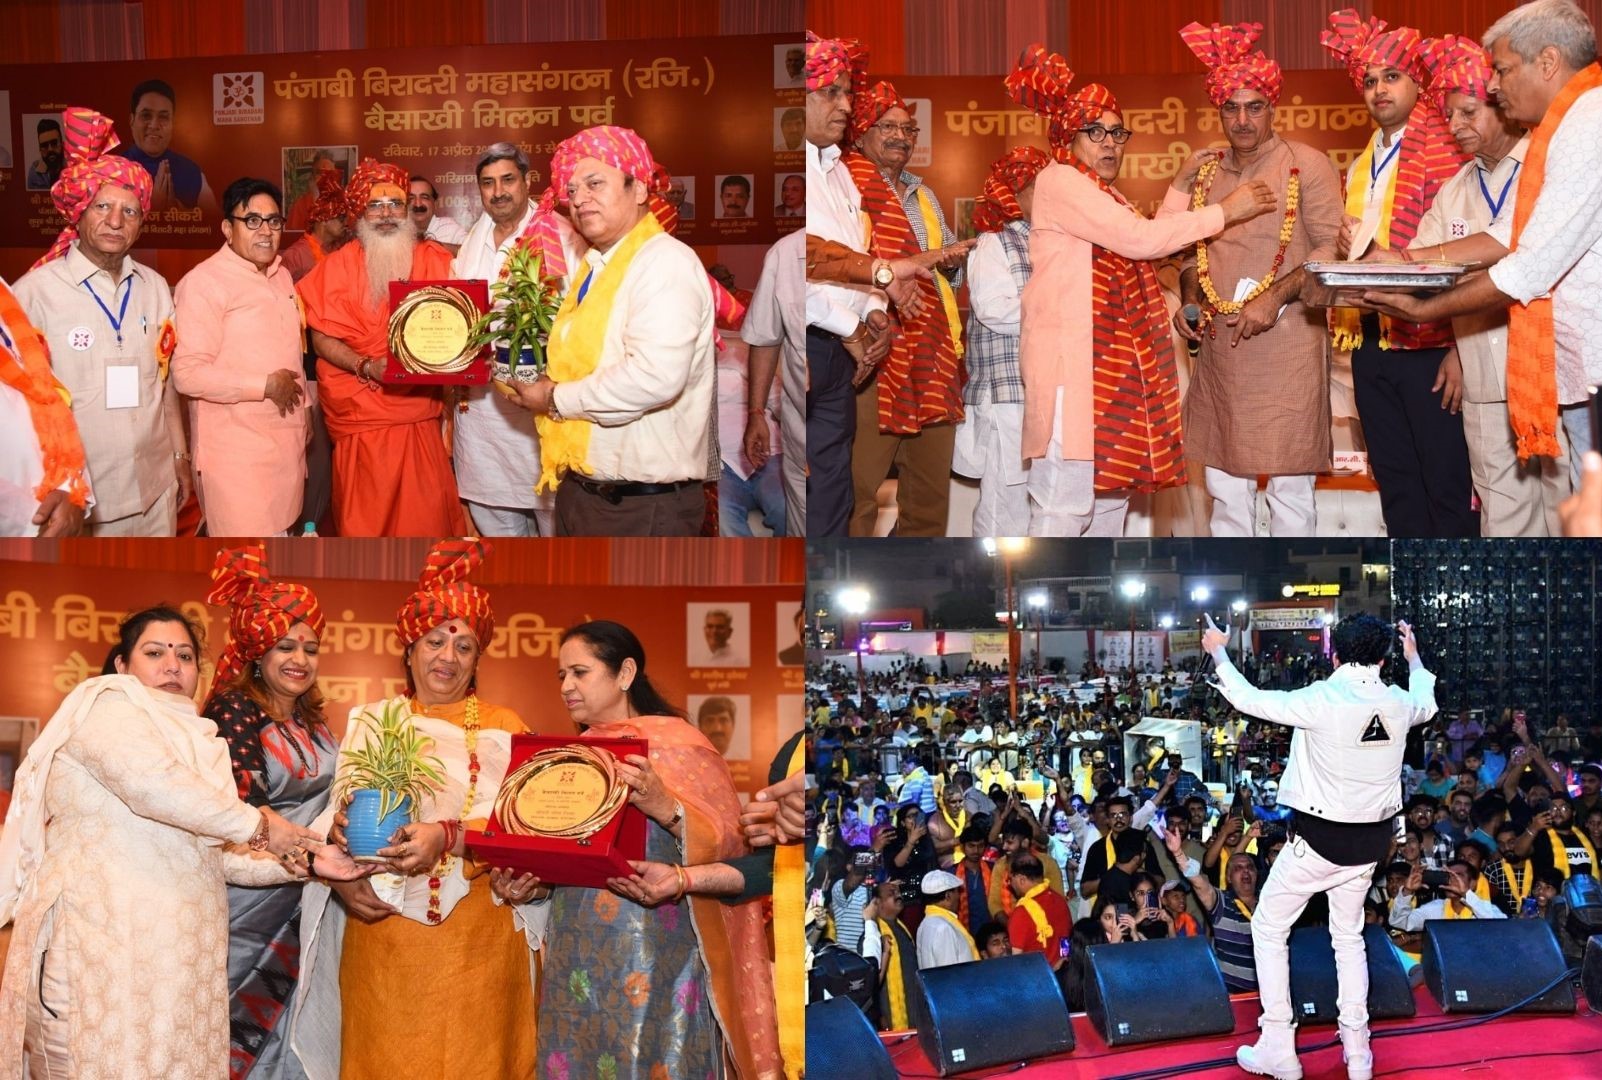 पंजाबी बिरादरी महा संगठन के बैनर तले बैसाखी मिलन समारोह में दिखी पंजाबियों की एकता